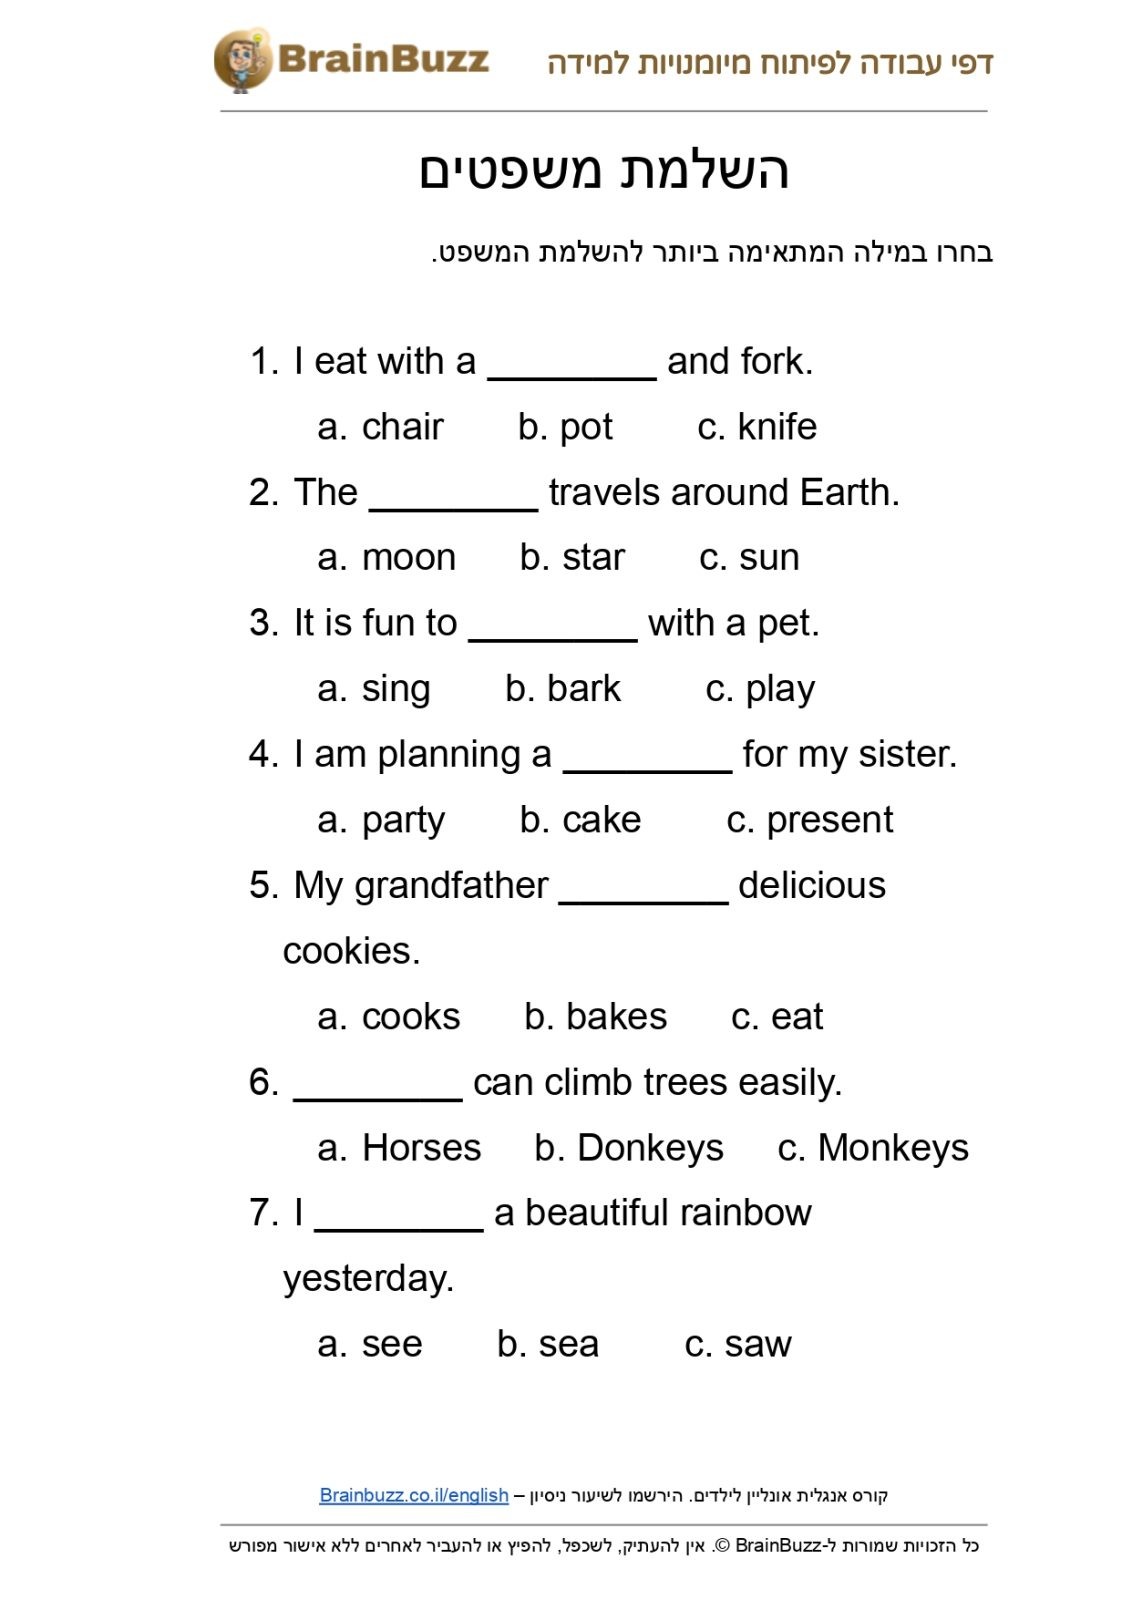 השלמת משפטים באנגלית – דף עבודה באנגלית לילדים בחינם